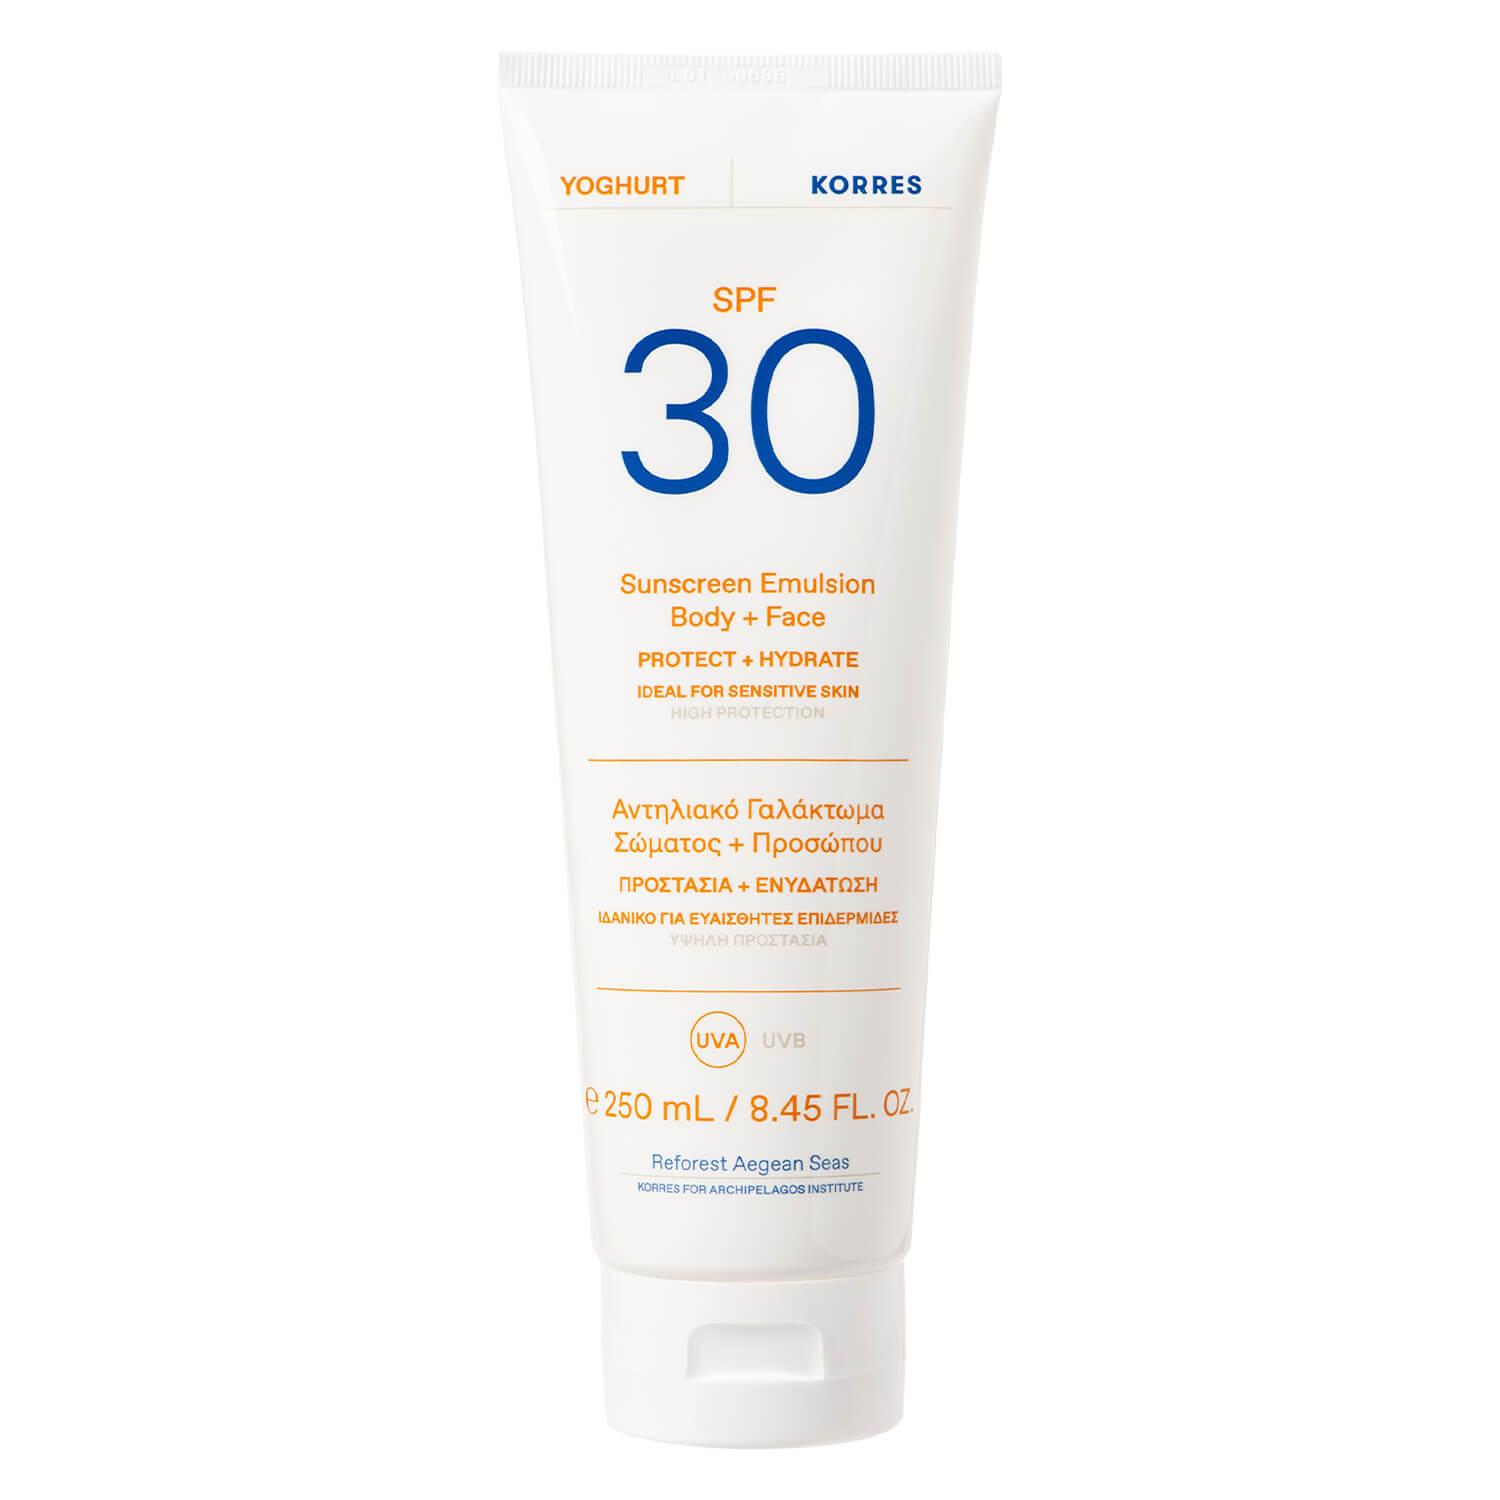 Korres Care - Yoghurt Sunscreen Emulsion Body + Face SPF30